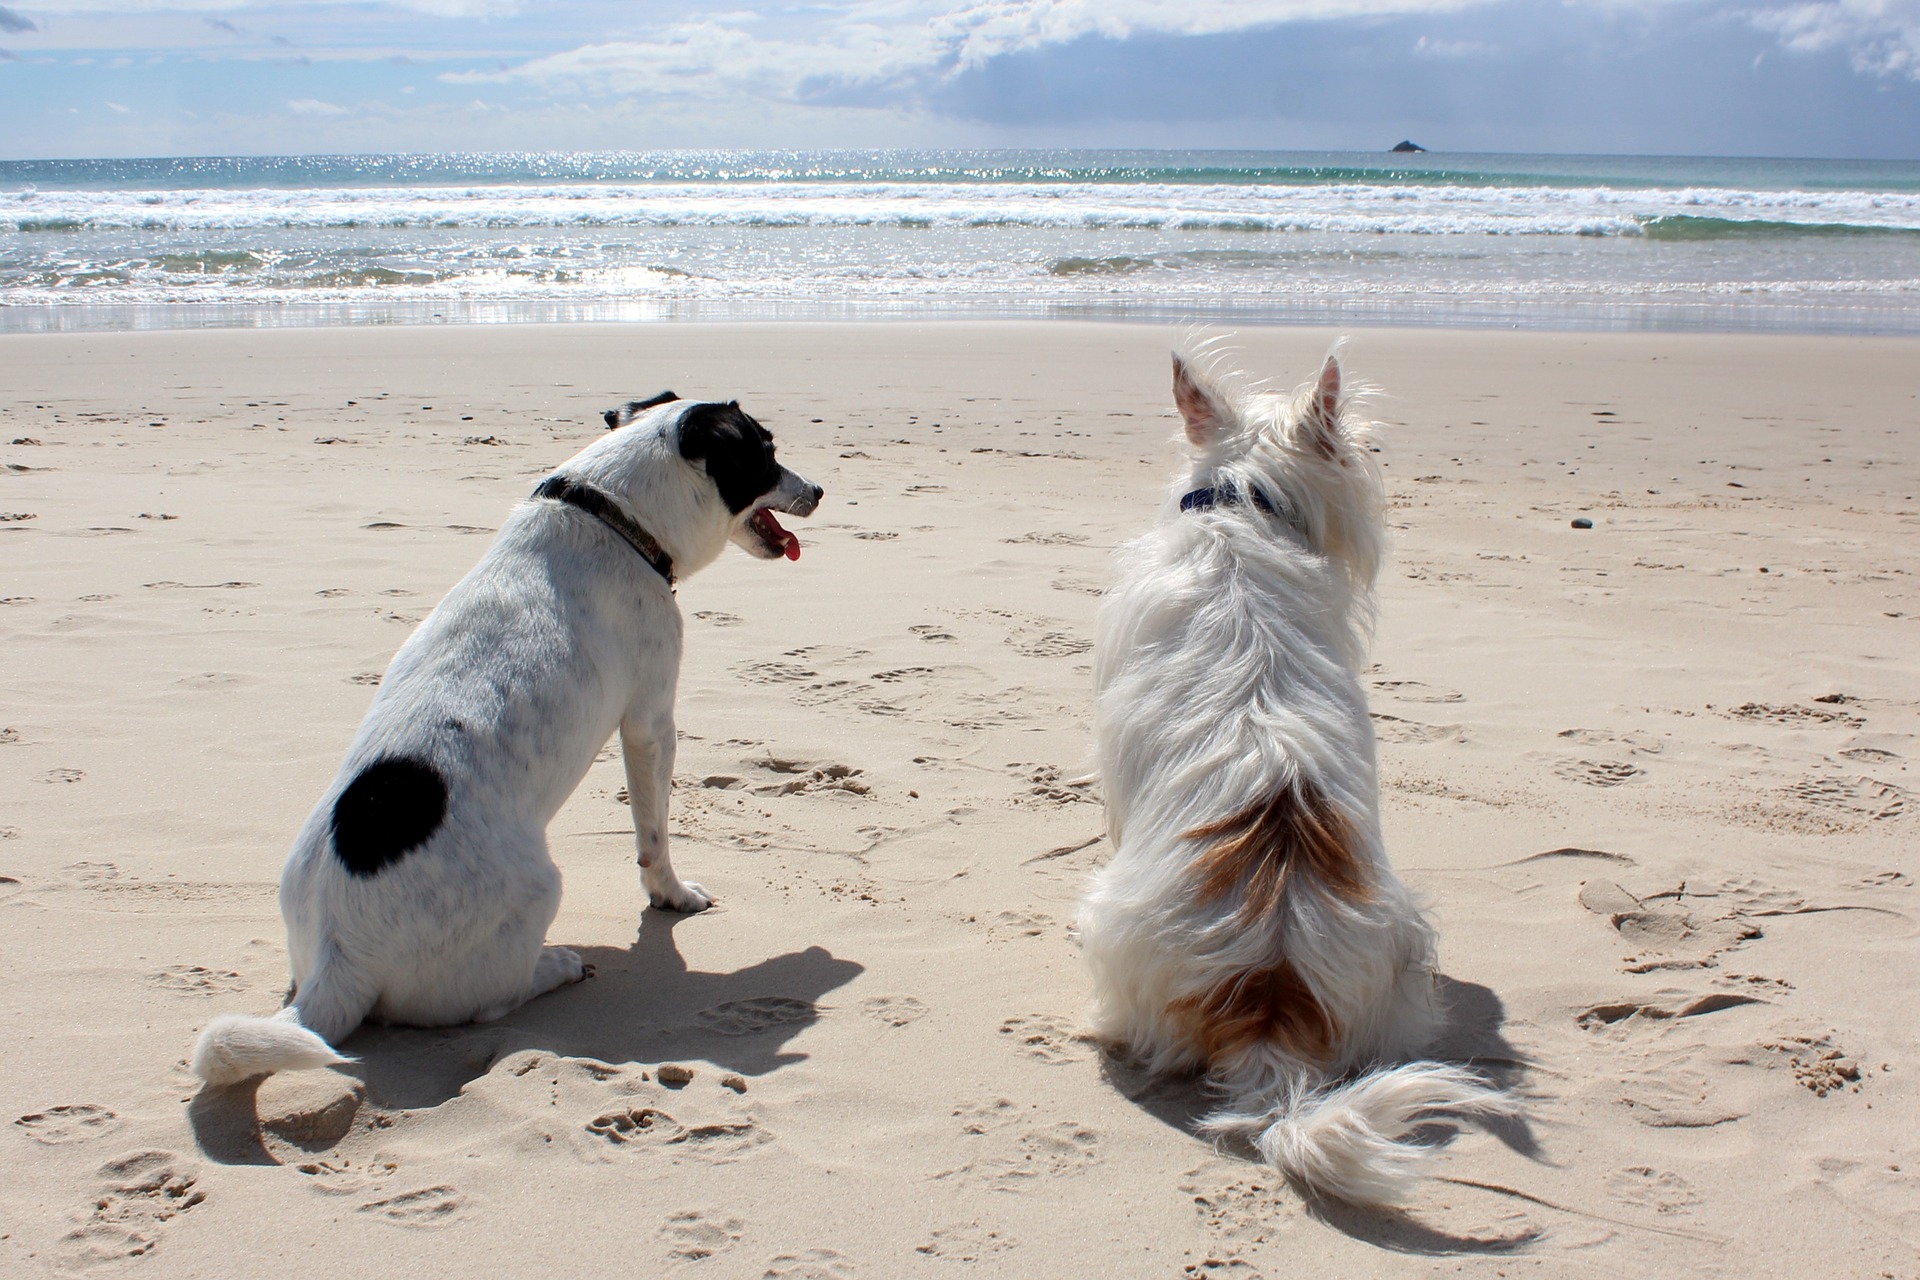 Při pobytu se psem na pláži buďte obzvláště opatrní, mějte vždy vodítko a náhubek. Uvědomte si ostatní a nedovolte, aby si váš pes hrál jejich blízkosti.